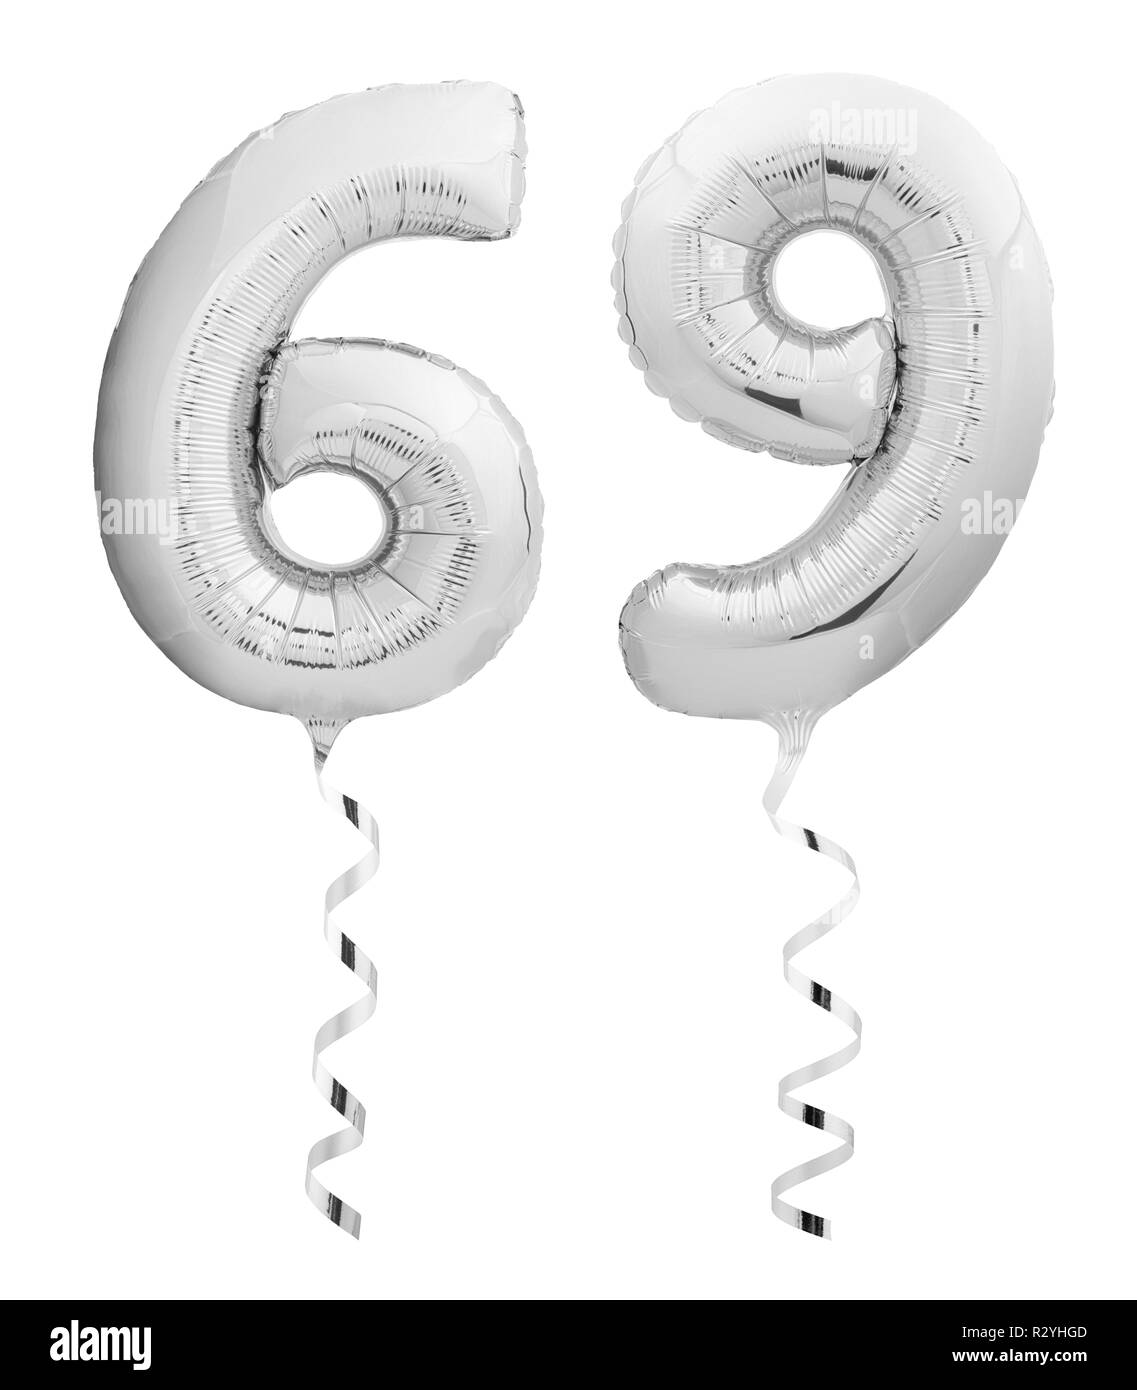 Argent soixante neuf 69 faits de ballon gonflable avec le ruban sur fond blanc Banque D'Images